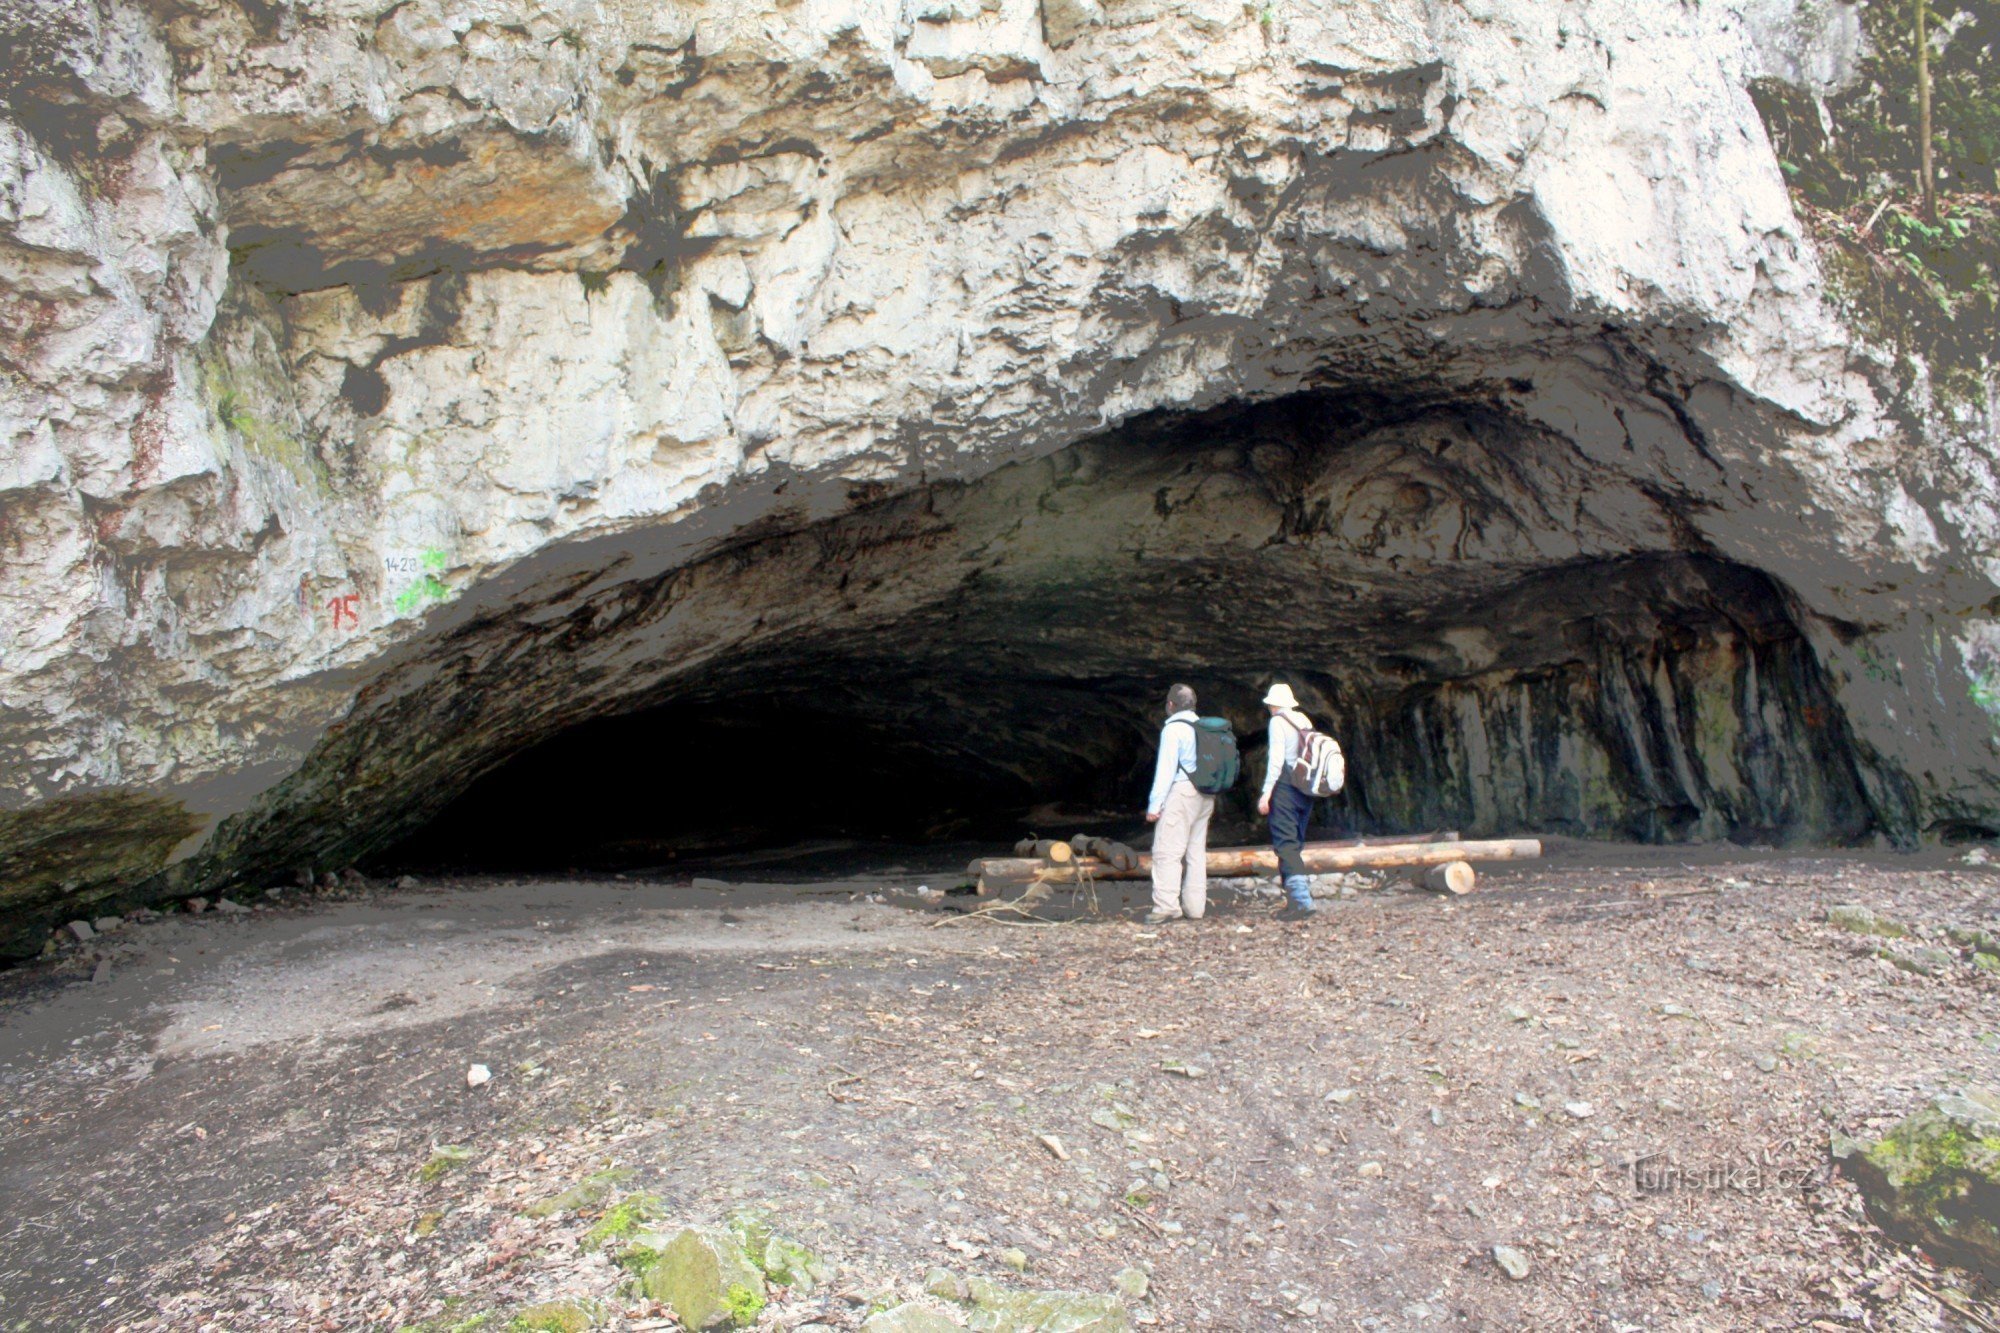 Indgang til Pekárna-grotten